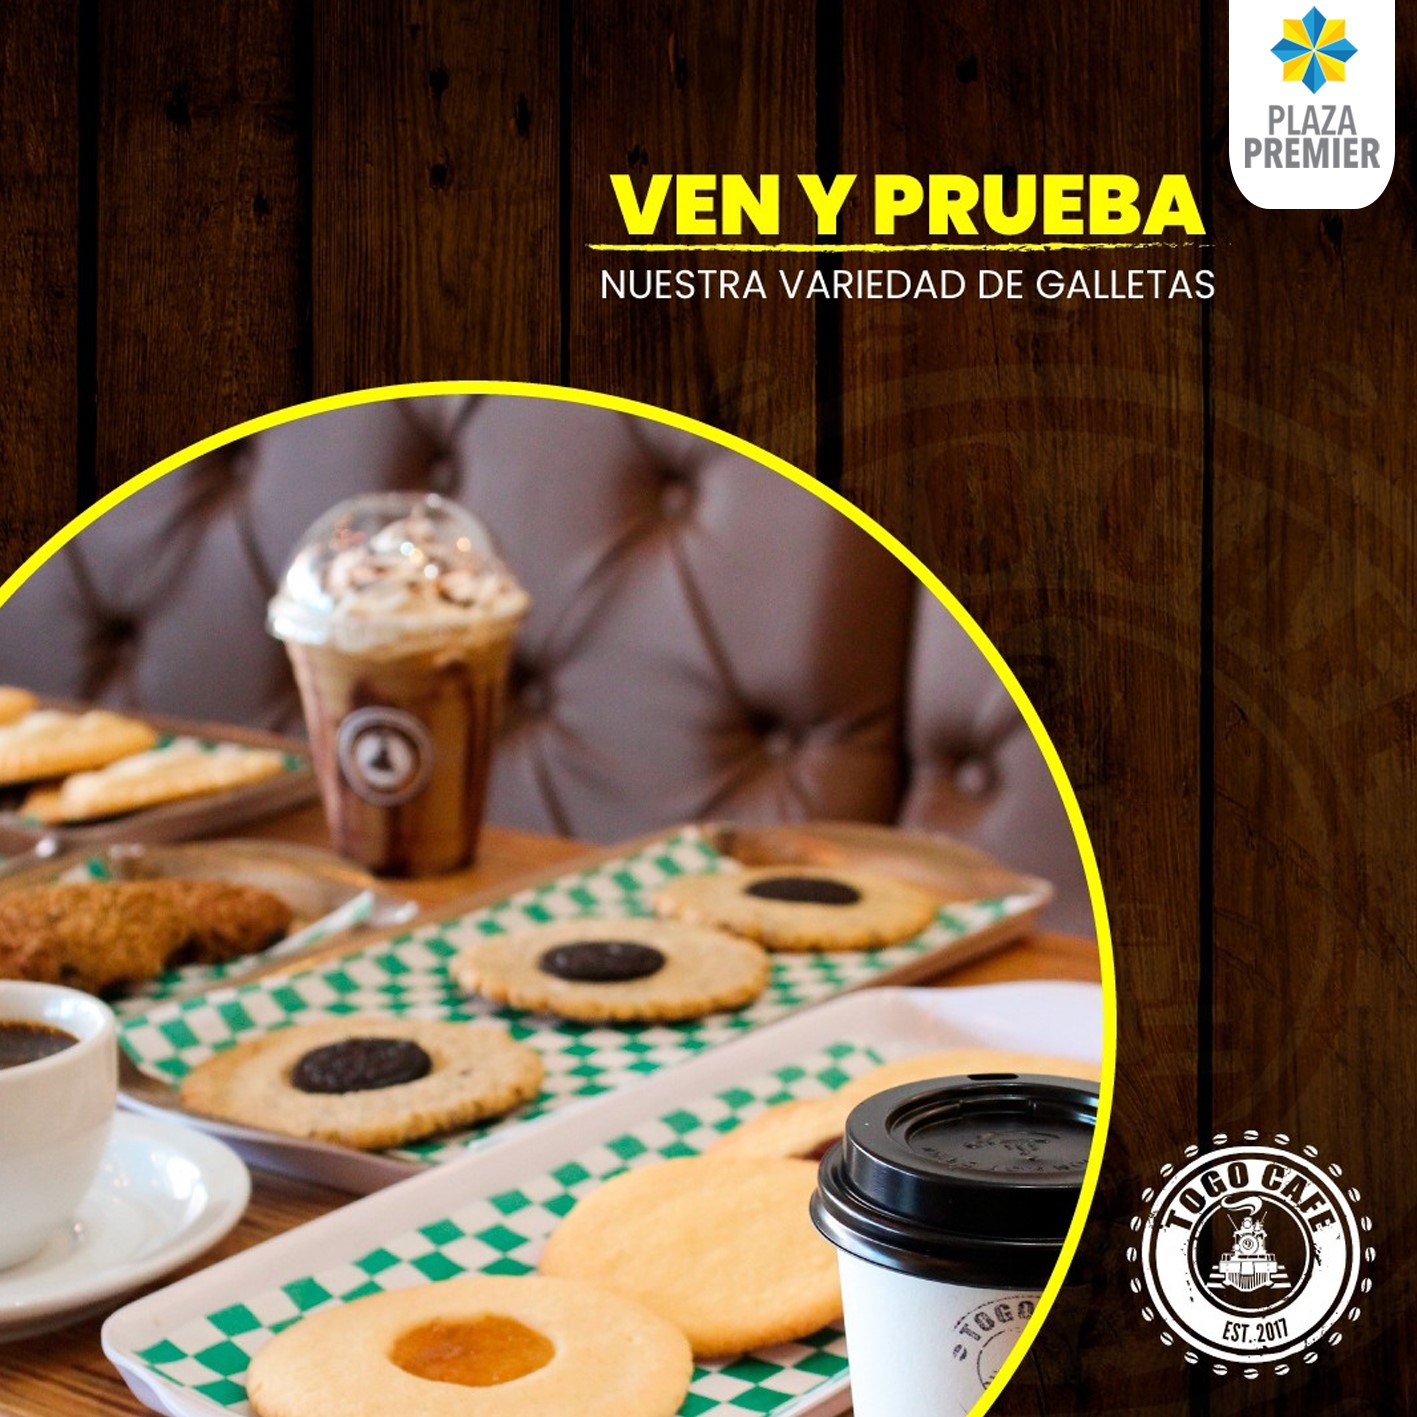 The best La Ceiba coffee in Honduras